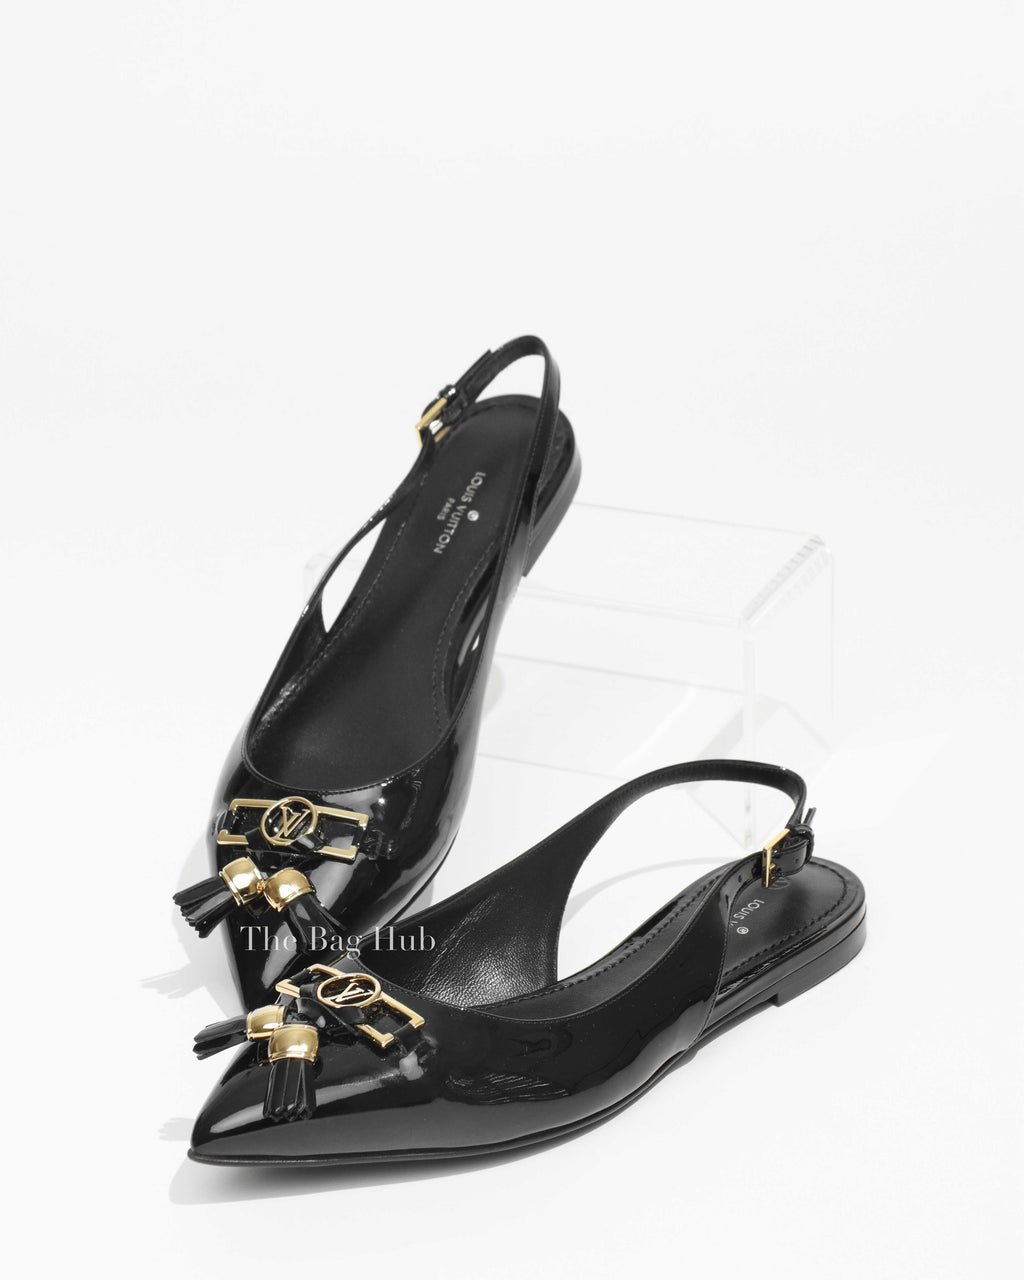 Louis Vuitton Noir Patent Leather Insider Ballet Flats Slingback Size 35.5-1